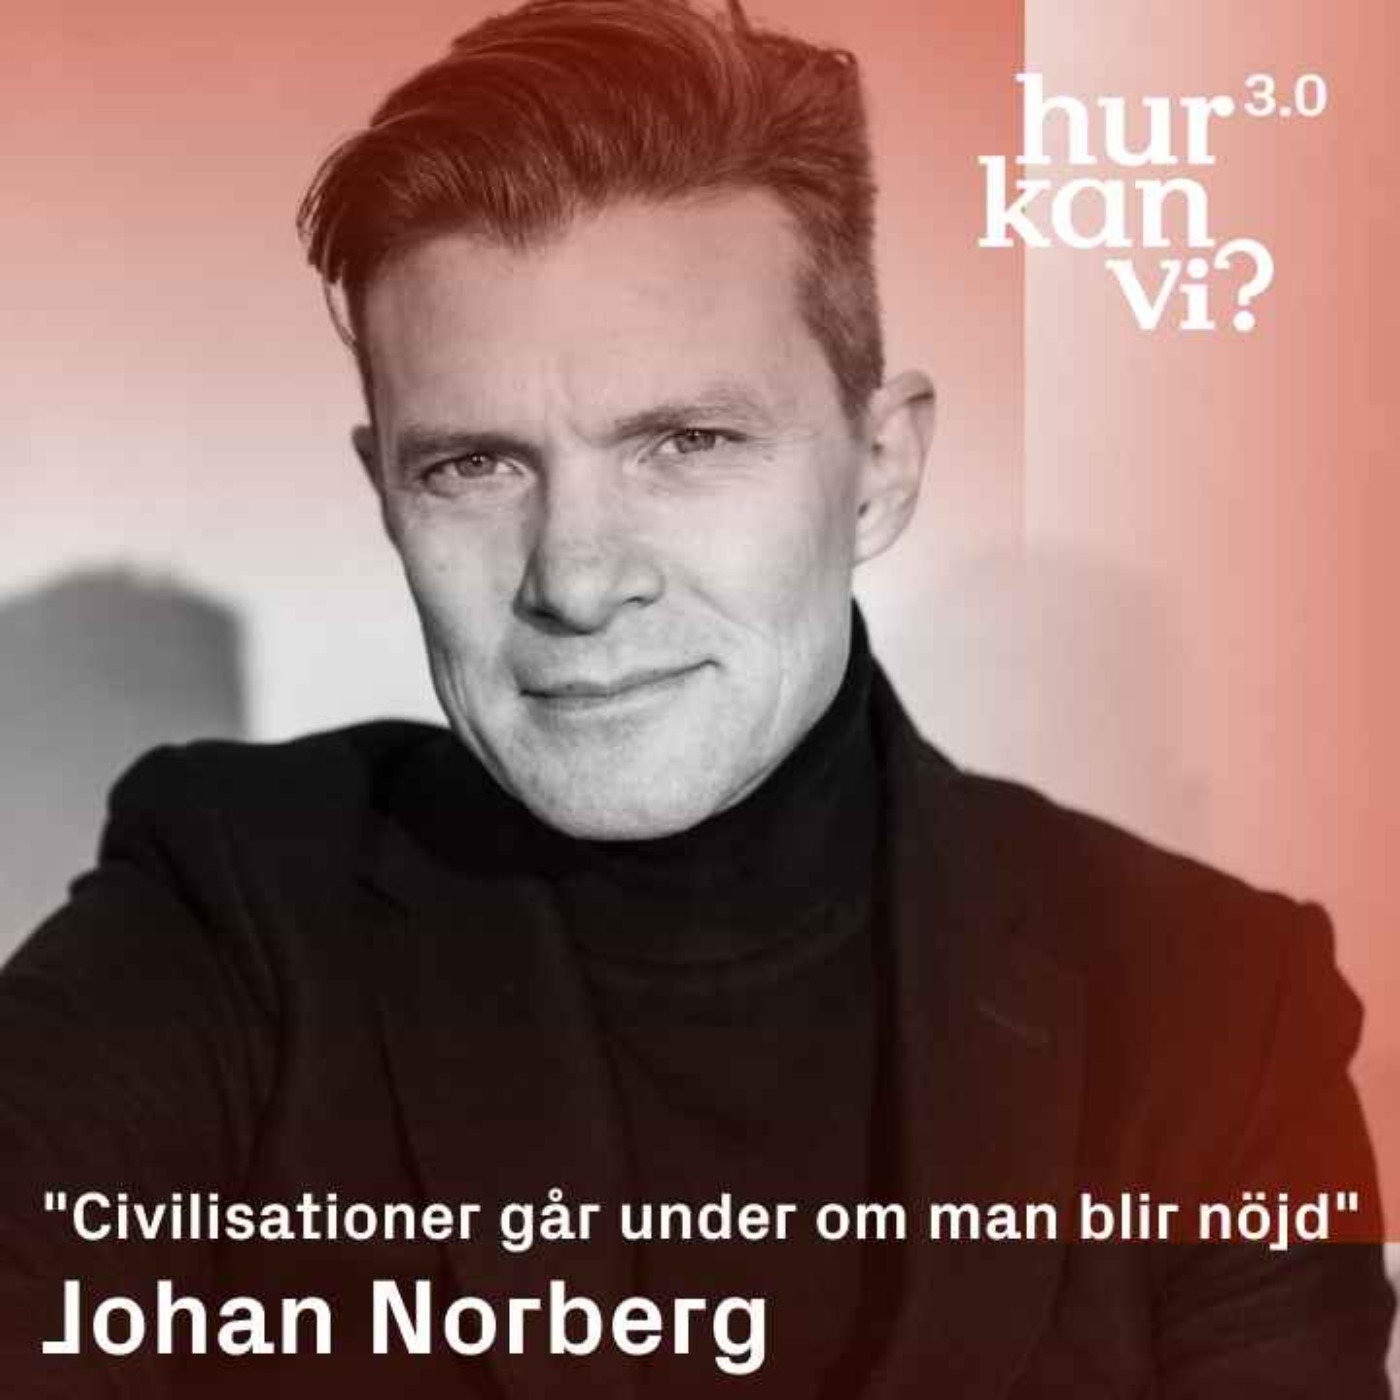 Johan Norberg - ”Civilisationer går under om man blir nöjd”